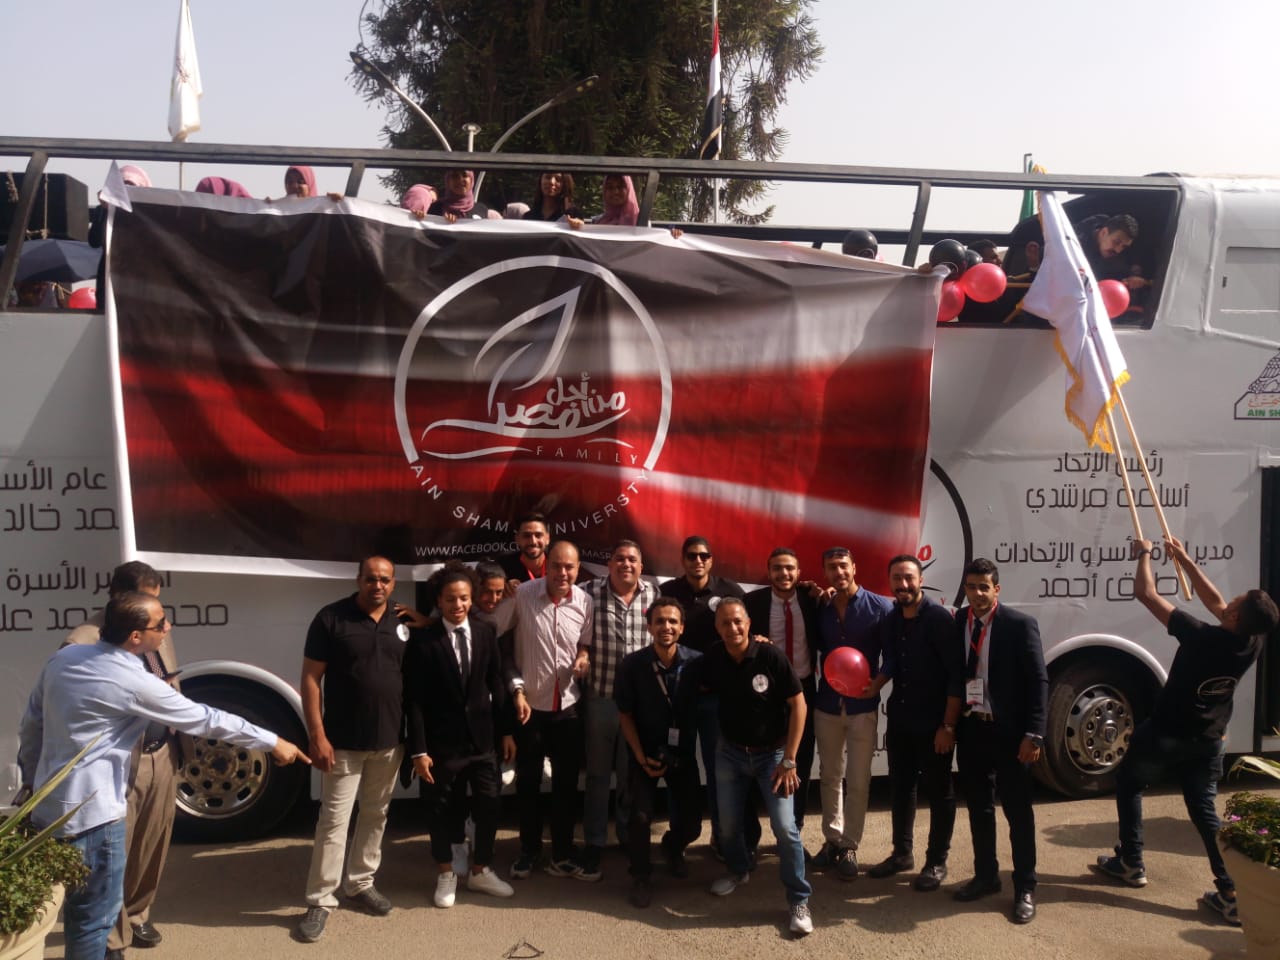   بالصور| «من أجل مصر» تنظم احتفالية بانتصارات أكتوبر فى جامعة عين شمس